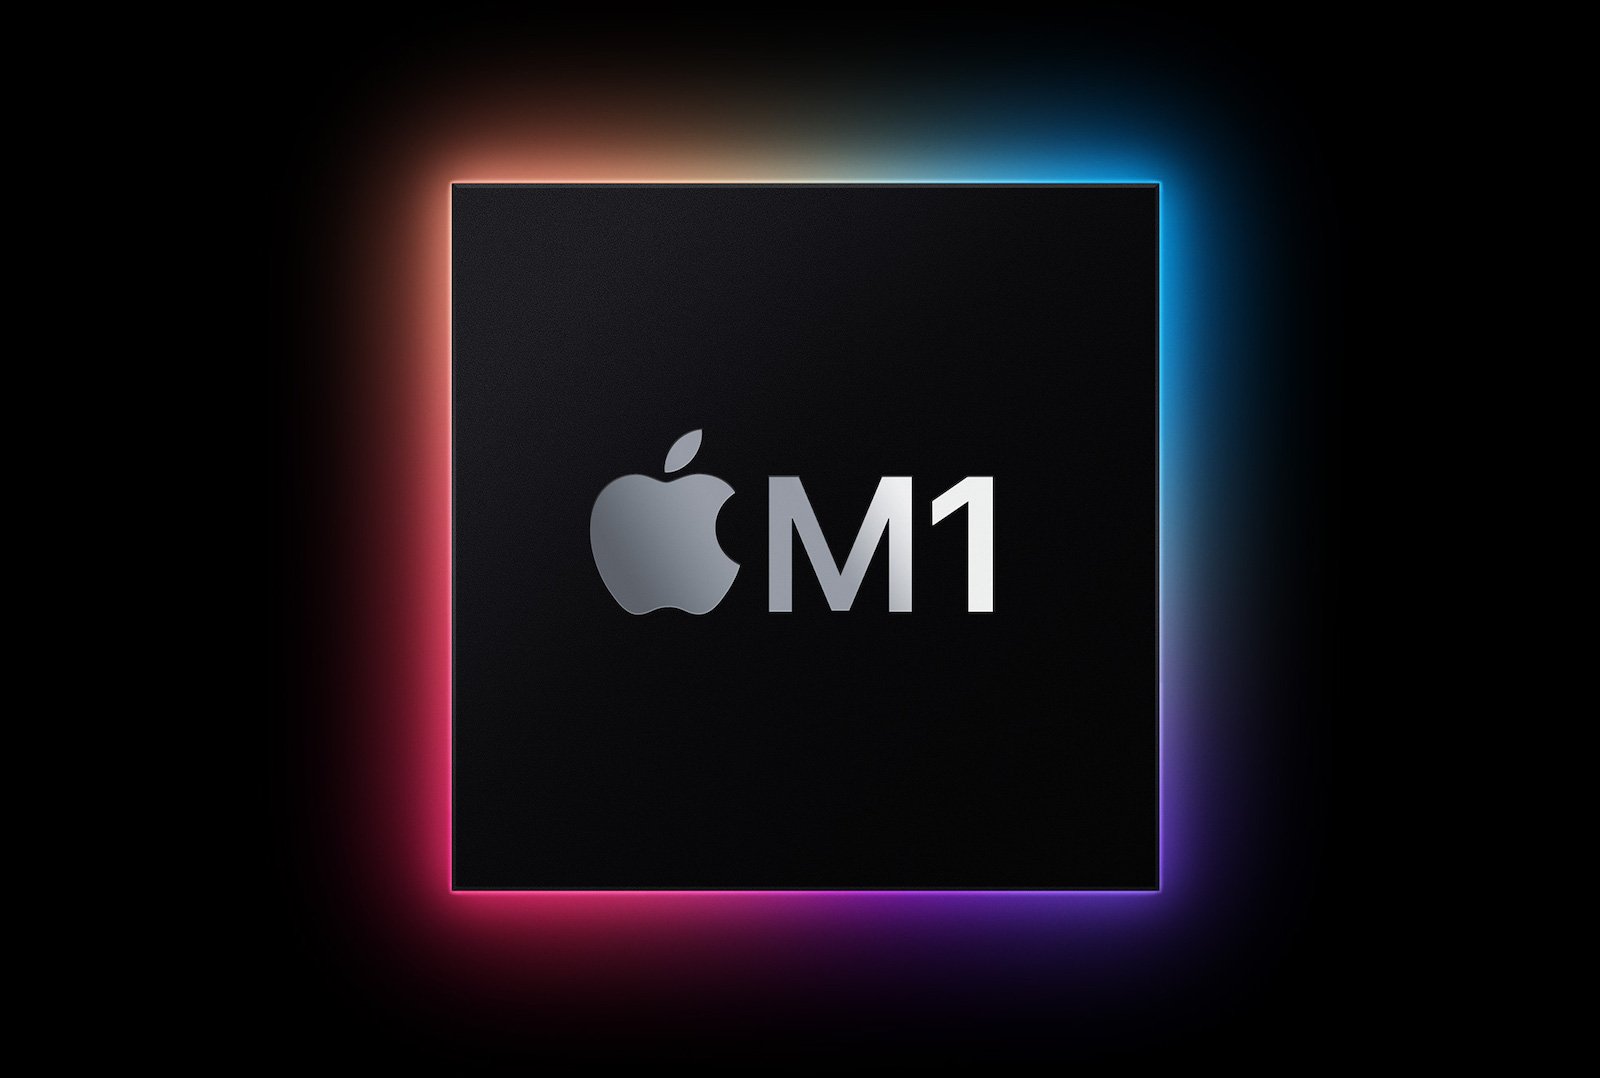 Appleが自社で設計・開発したMac用のSoC「Apple M1」が発表された　画像はすべてアップルが開催した発表会のキャプチャおよび提供写真より